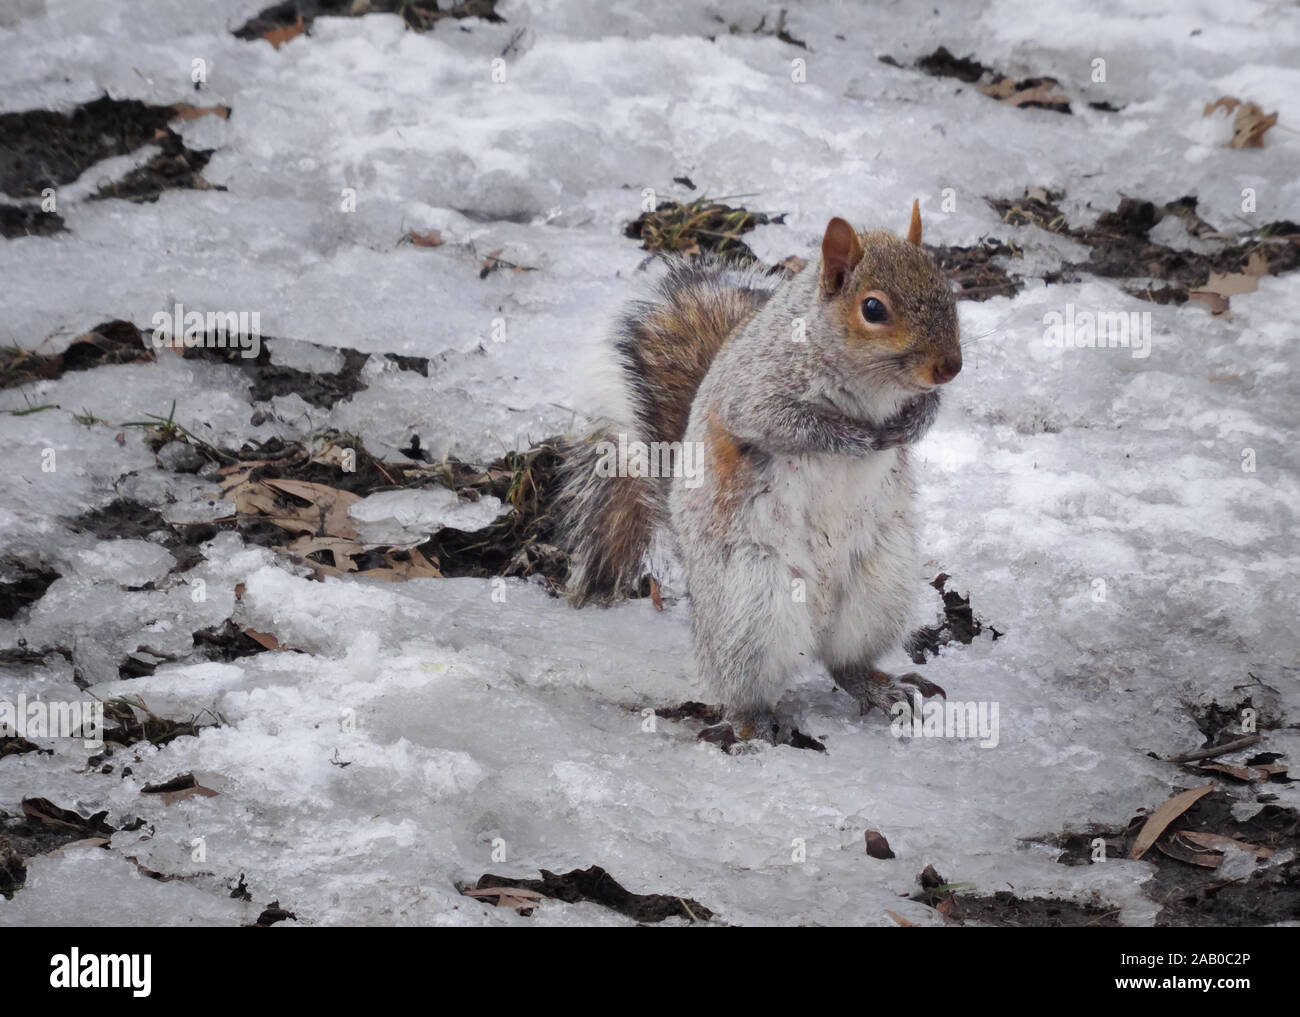 Scoiattolo grigio in scena invernale cercando timido e mendicando per cibo, girato nel Central Park di New York. Neve e ghiaccio visibili, diurno shot. Foto Stock